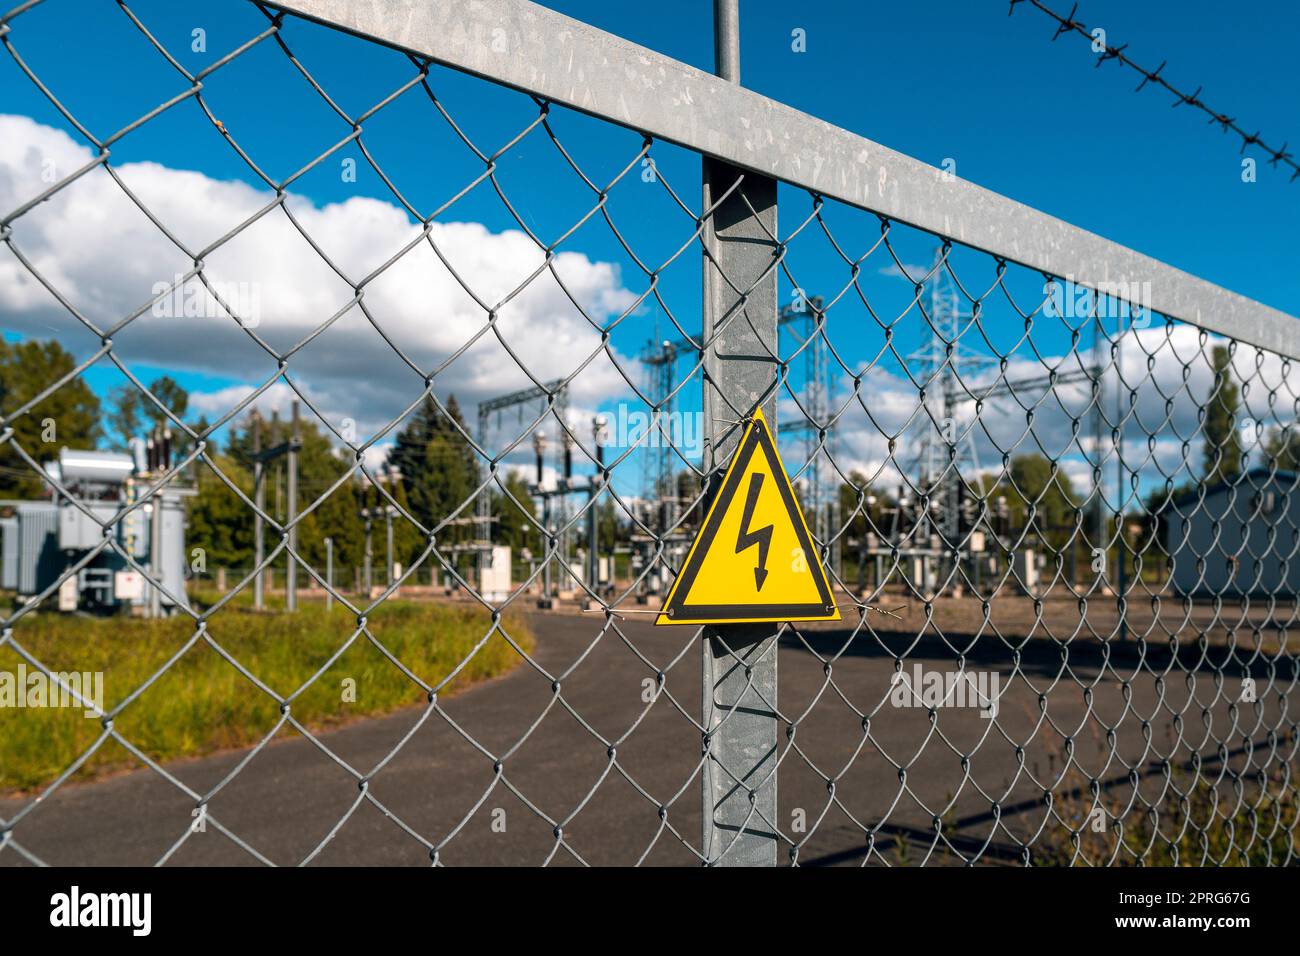 Triangle jaune avec éclairs derrière une clôture en maille métallique Banque D'Images